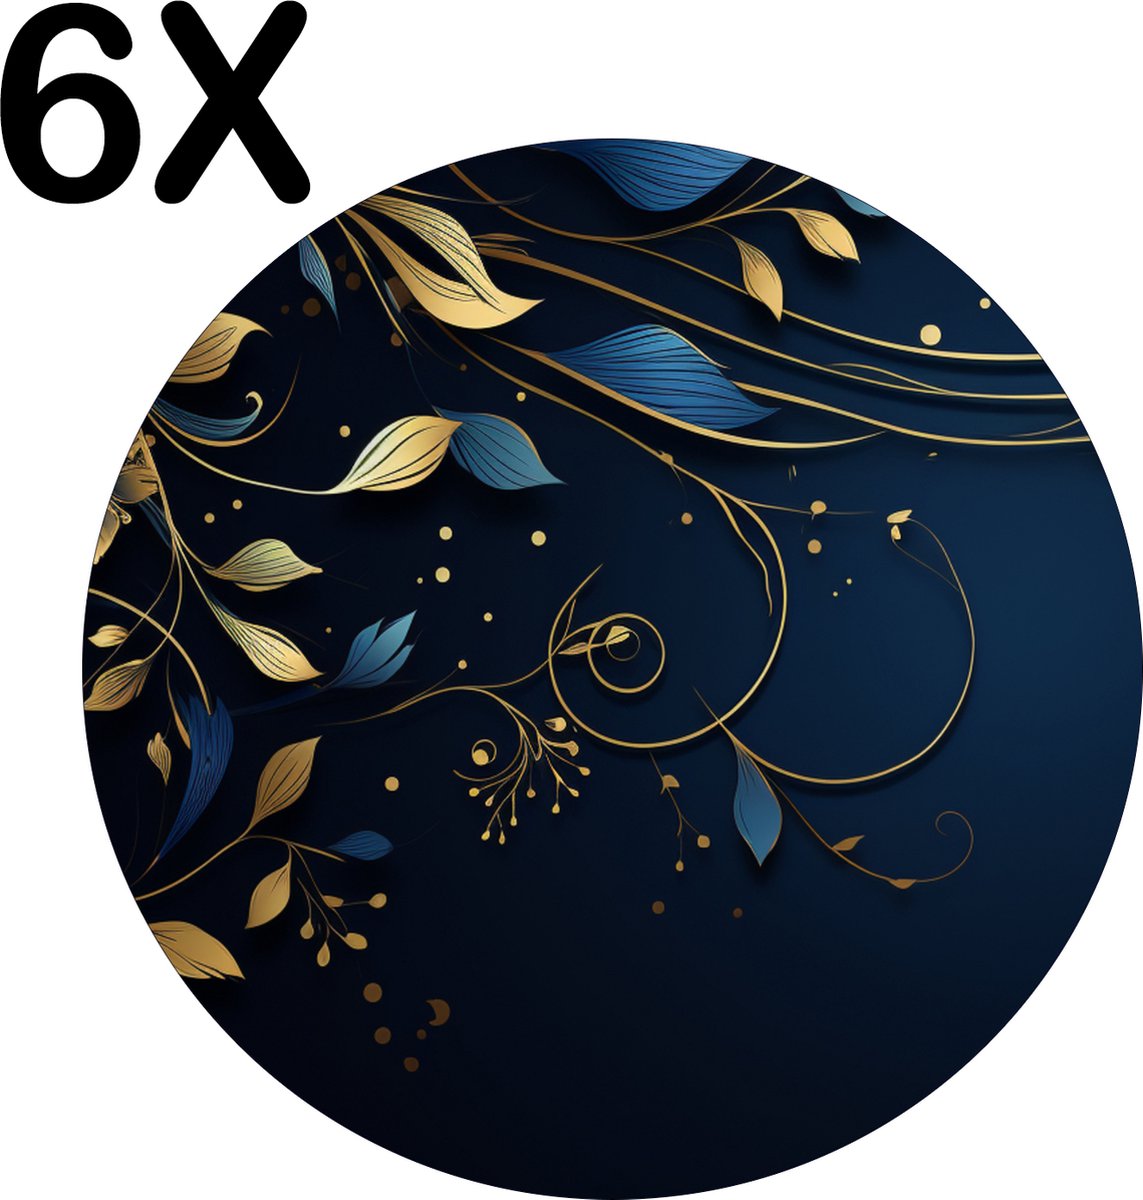 BWK Flexibele Ronde Placemat - Donker Blauwe Achtergrond met Gouden Bloemen - Set van 6 Placemats - 50x50 cm - PVC Doek - Afneembaar